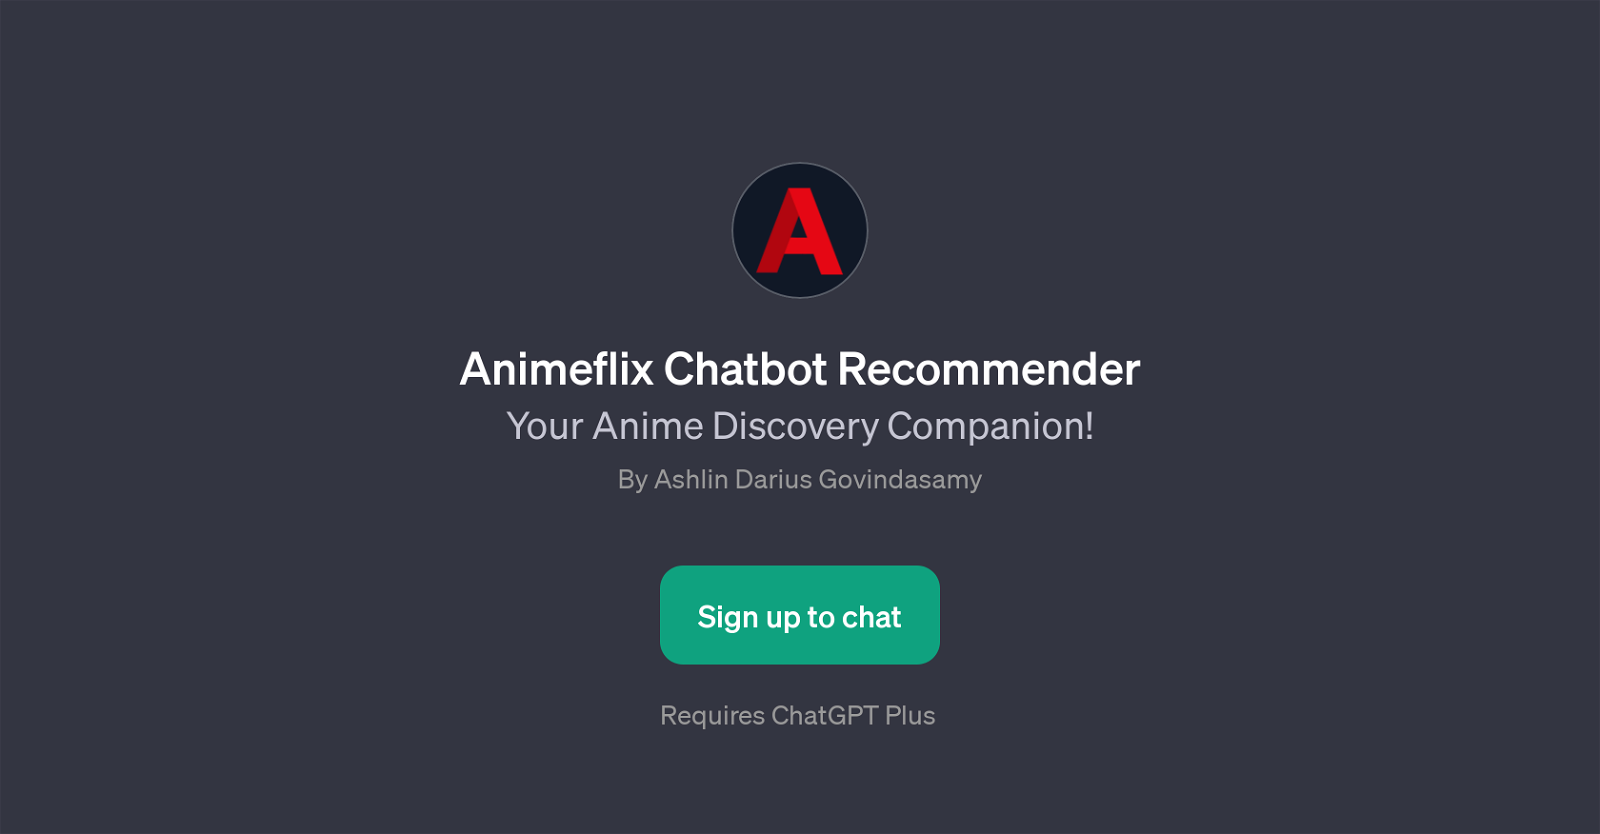 Animeflix Chatbot Recommender website